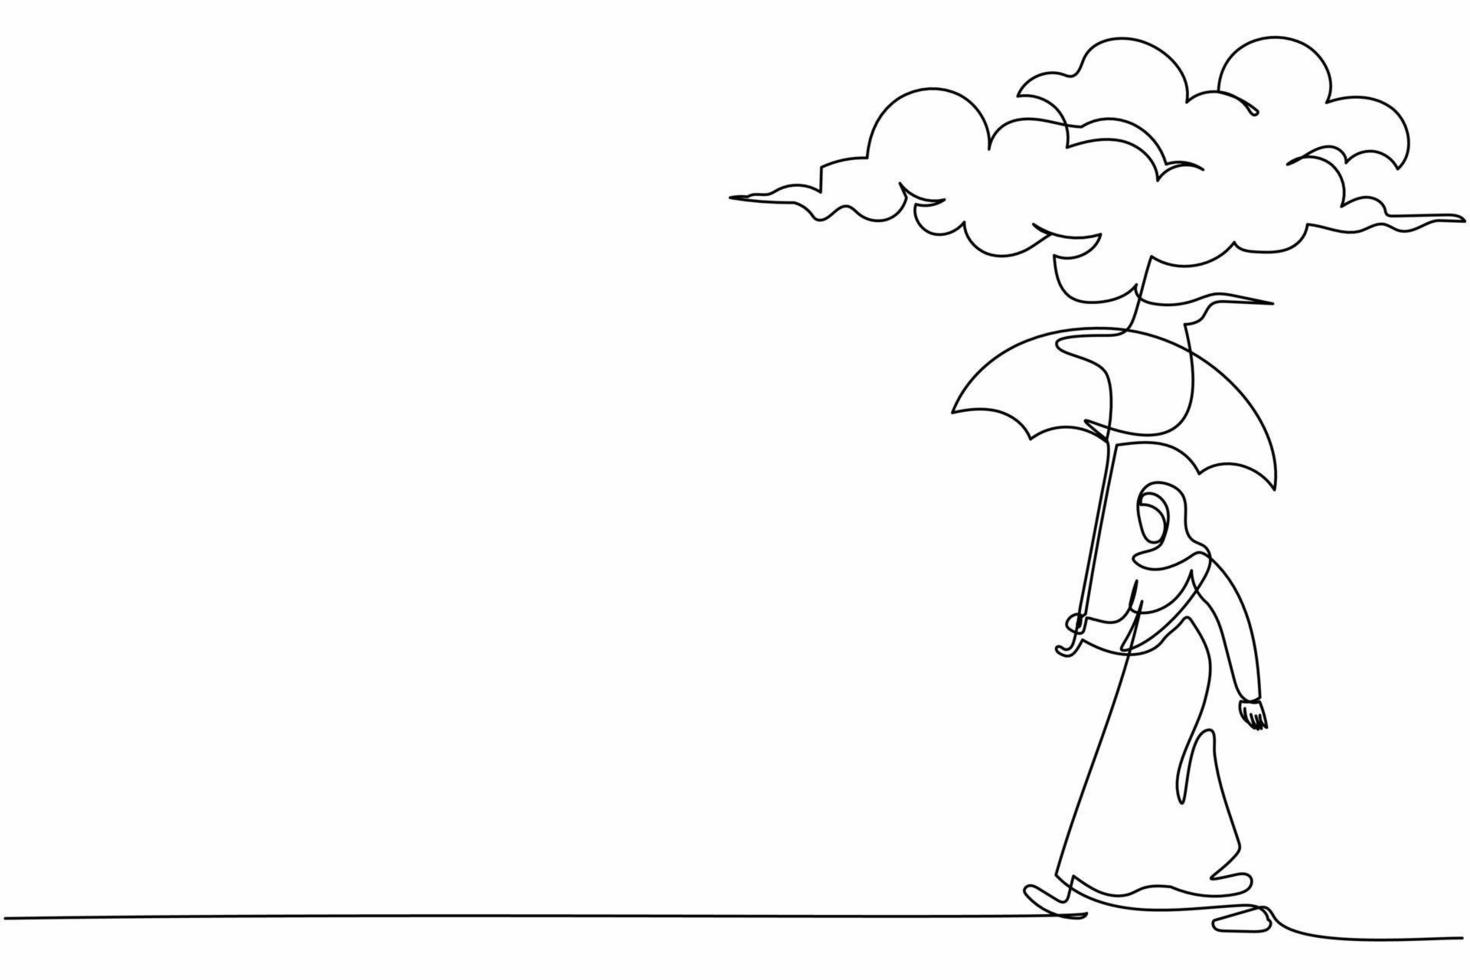 continu één lijntekening verdriet arabische zakenvrouw wandelen met paraplubak onder regenwolk. depressie, huilen, voorbijganger bij regenachtig weer. enkele lijn tekenen ontwerp vector grafische afbeelding